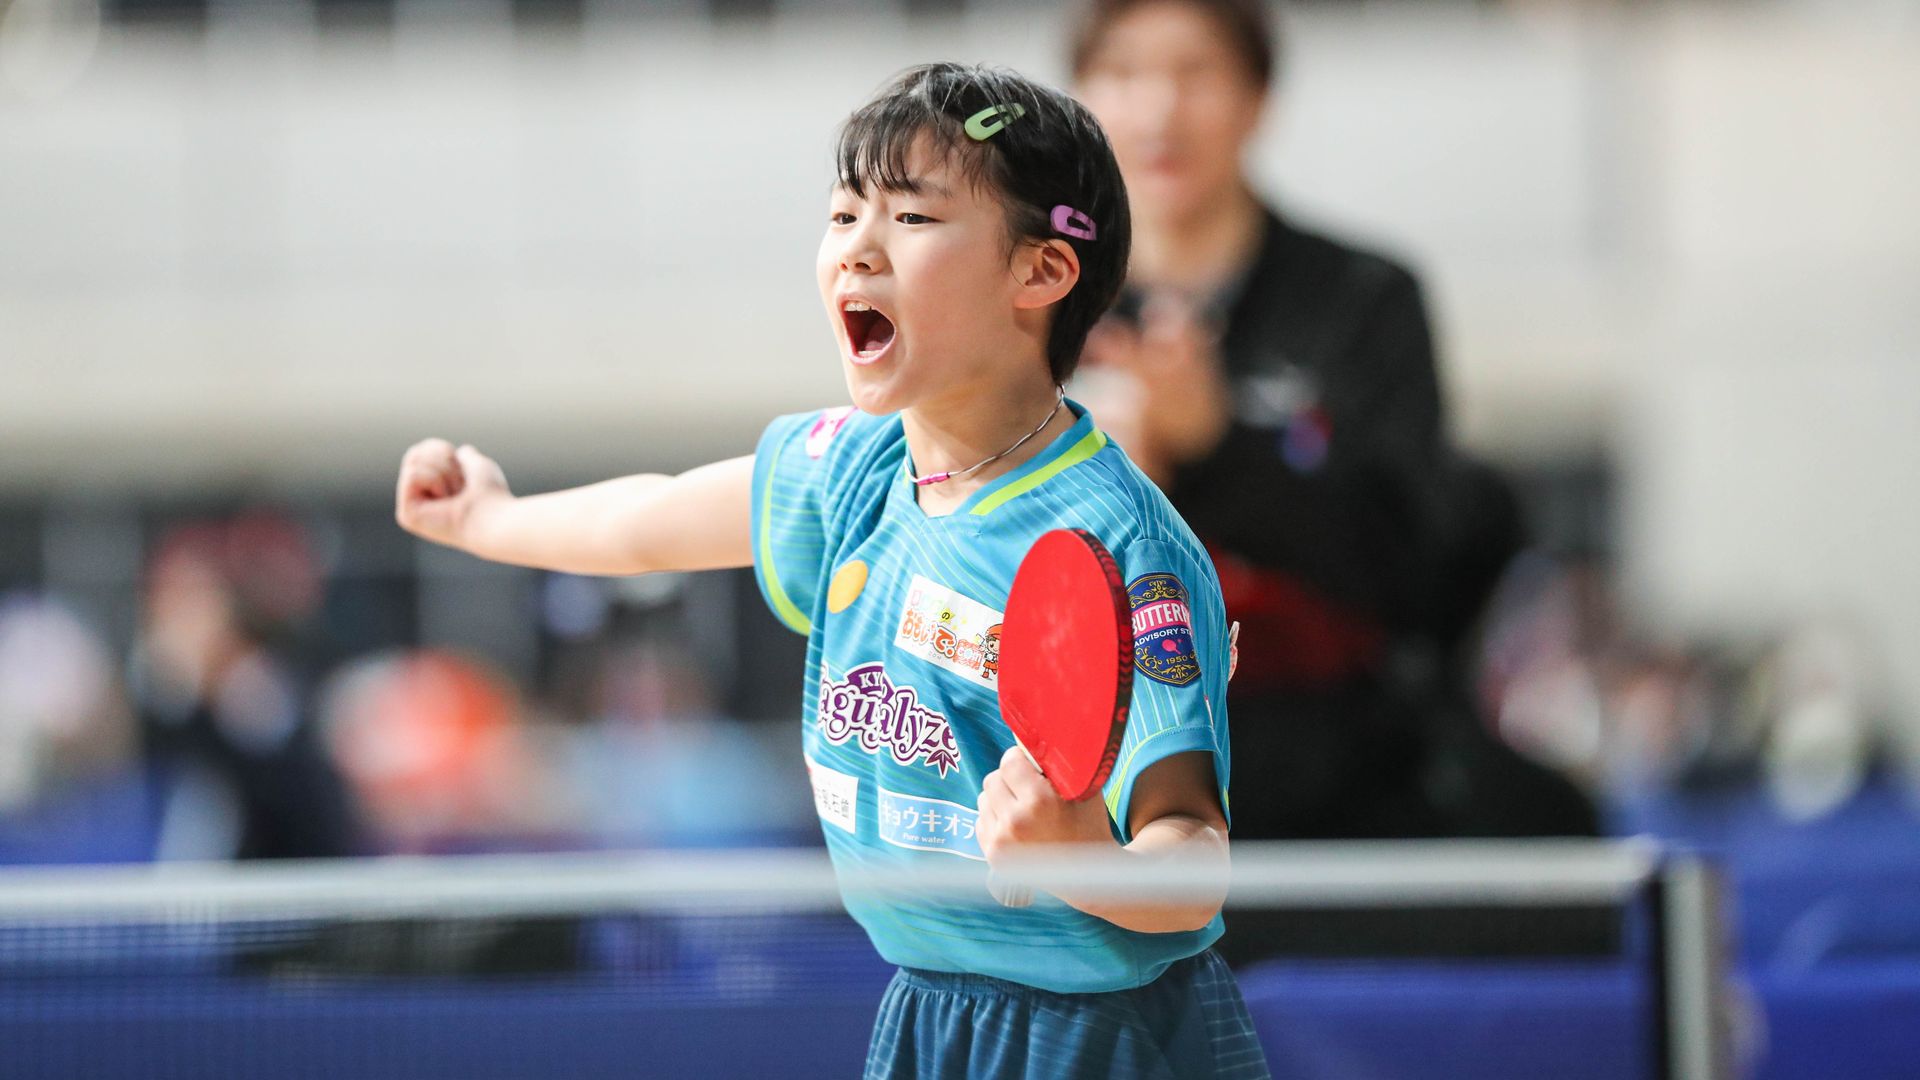 【全日本卓球】小学4年生・松島美空が2回戦突破、23日実施の3回戦で張本美和と対決へ